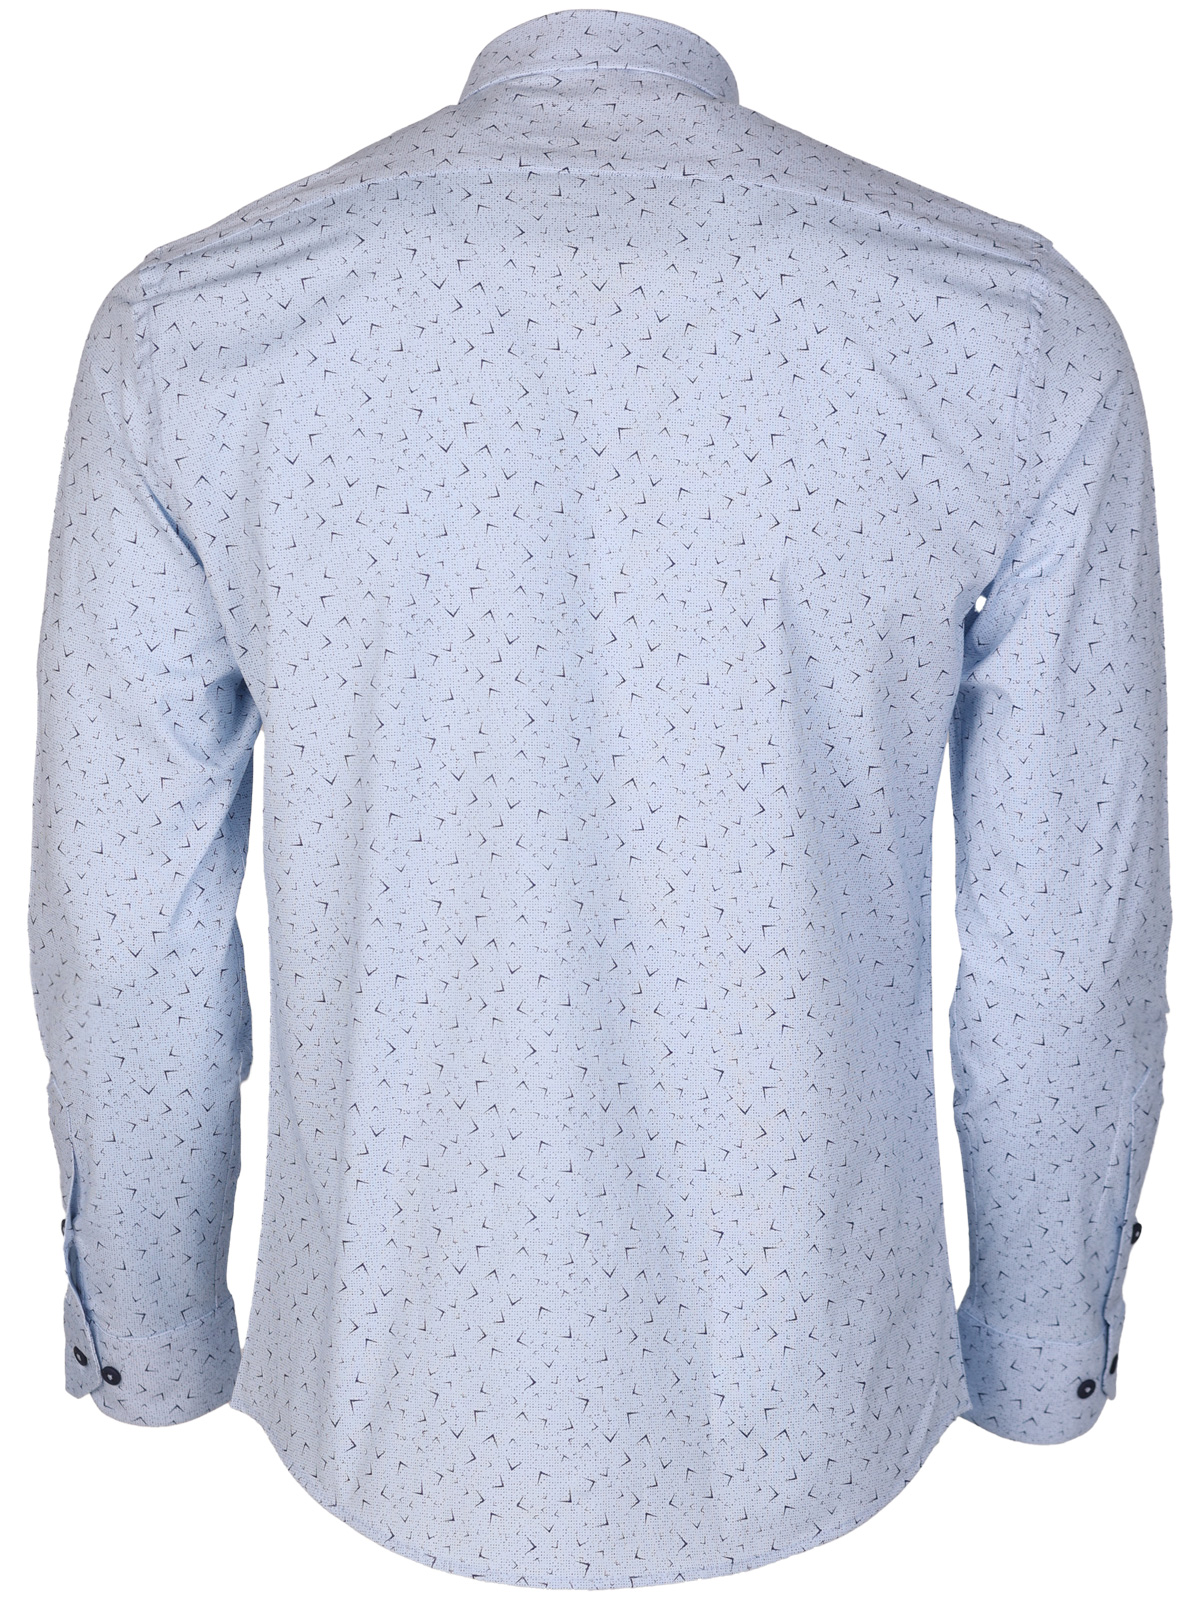 Ανδρικό πουκάμισο σε γαλάζιο χρώμα - 21612 € 44.43 img2